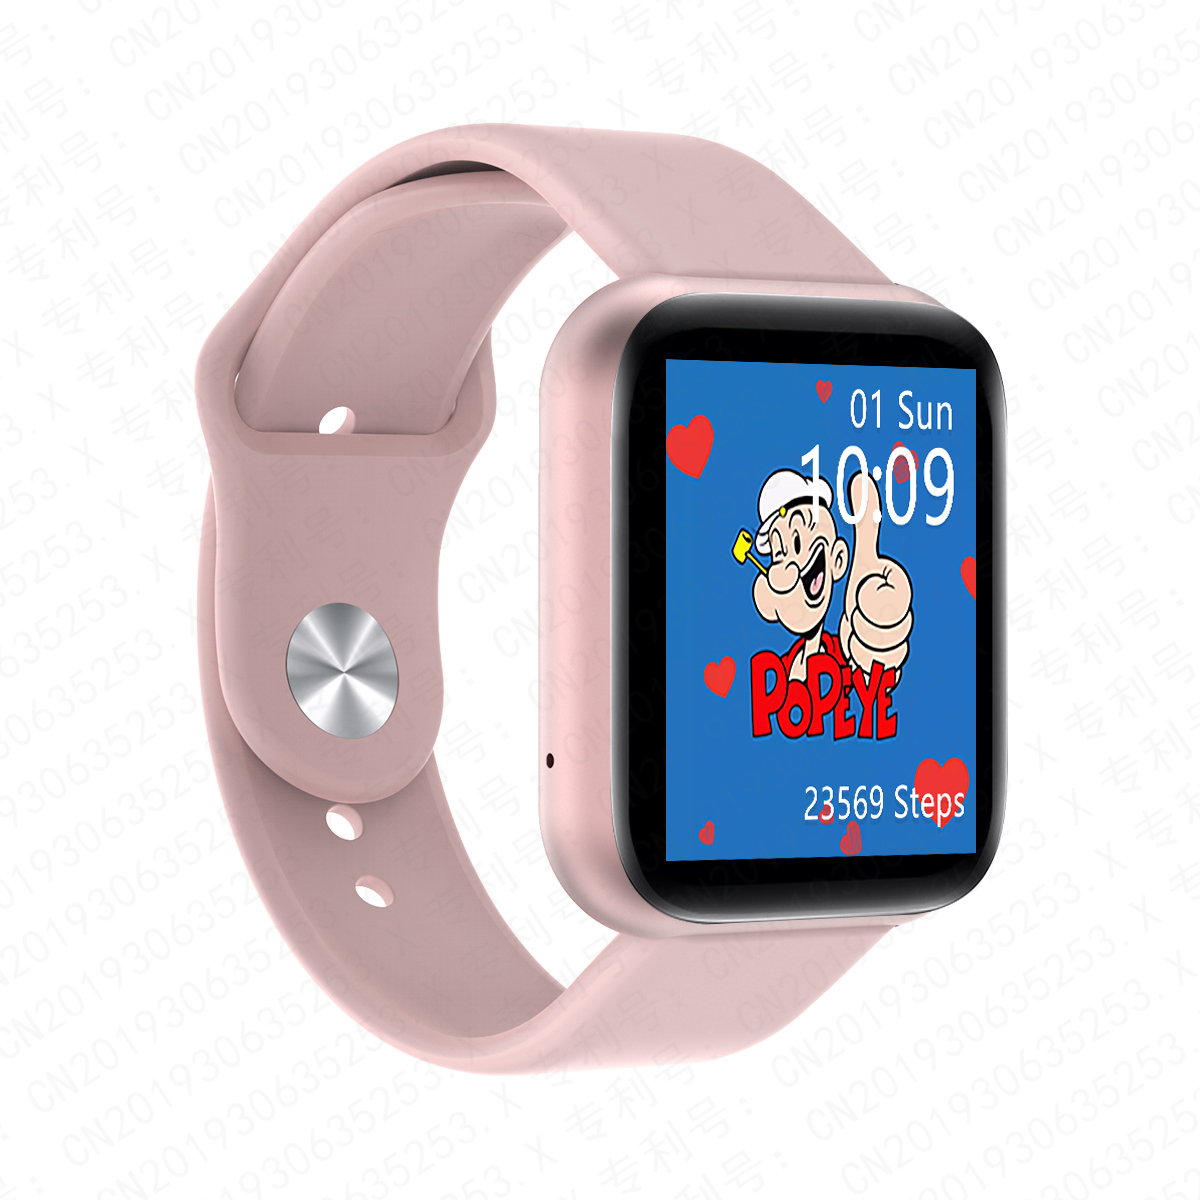 2020 D20 Bluetooth Smart Watches Men Women Kids Waterproof Sport Fitness Tracker Smart Bracelet Blood Pressure Heart Rate Monitor 